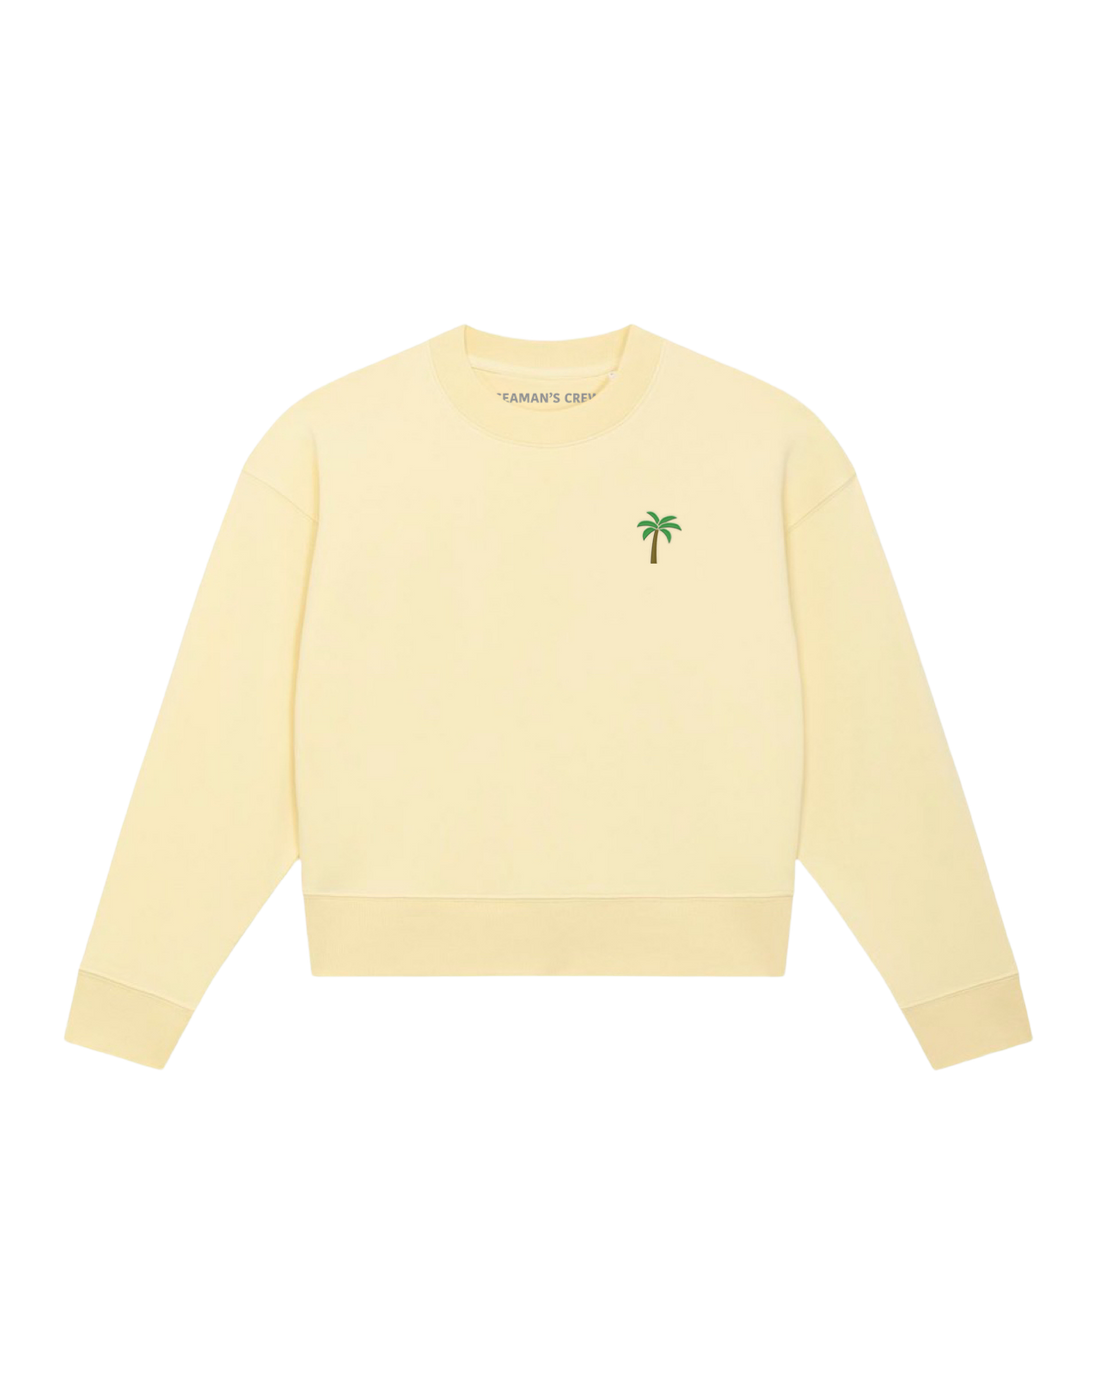 Palma embroidered women cropped sweatshirt - Seaman&